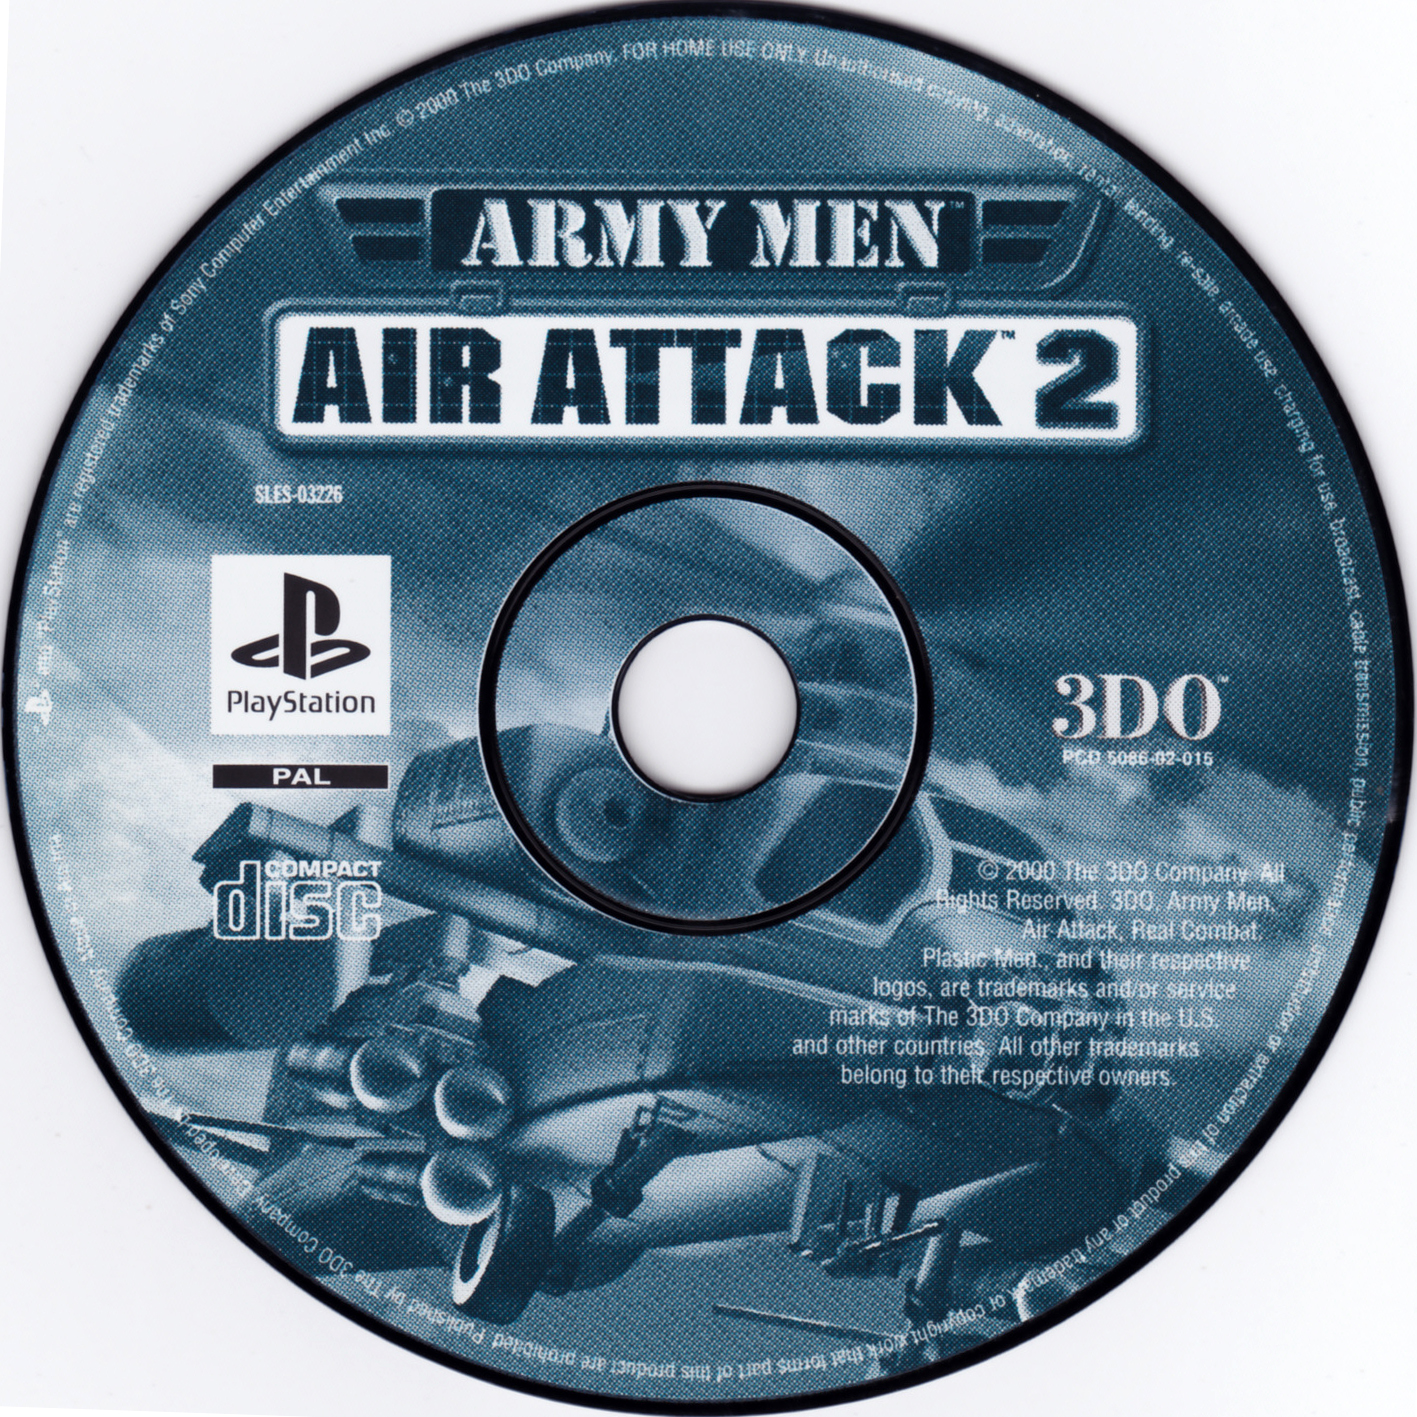 airattack 2 pc download